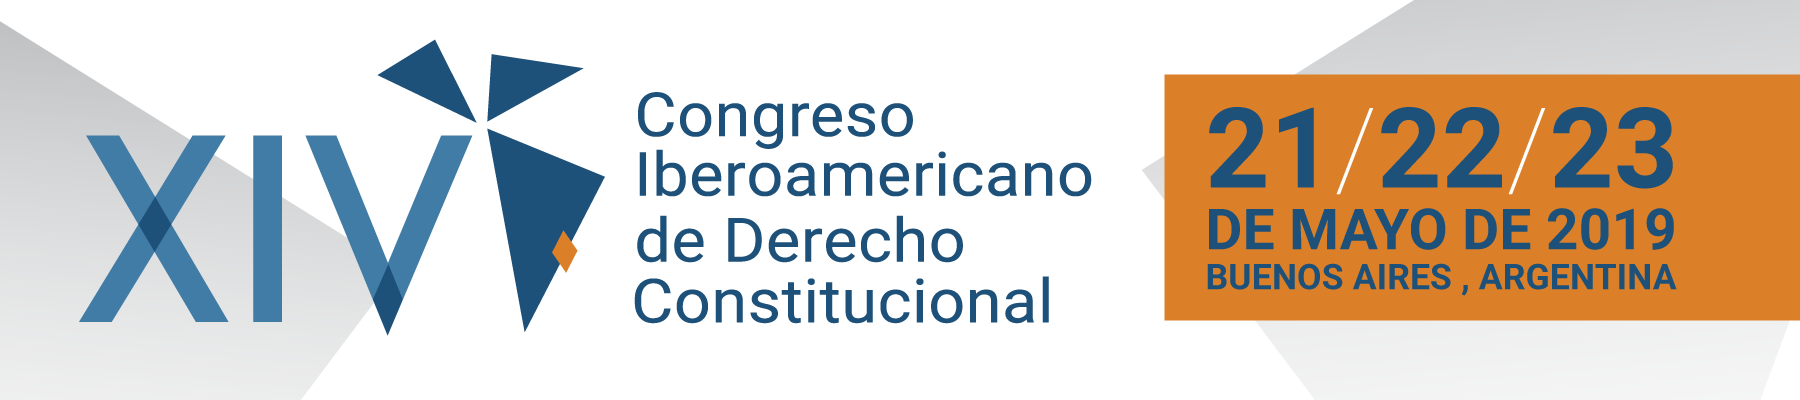 XIV CONGRESO IBEROAMERICANO DE DERECHO CONSTITUCIONAL - JOVENES